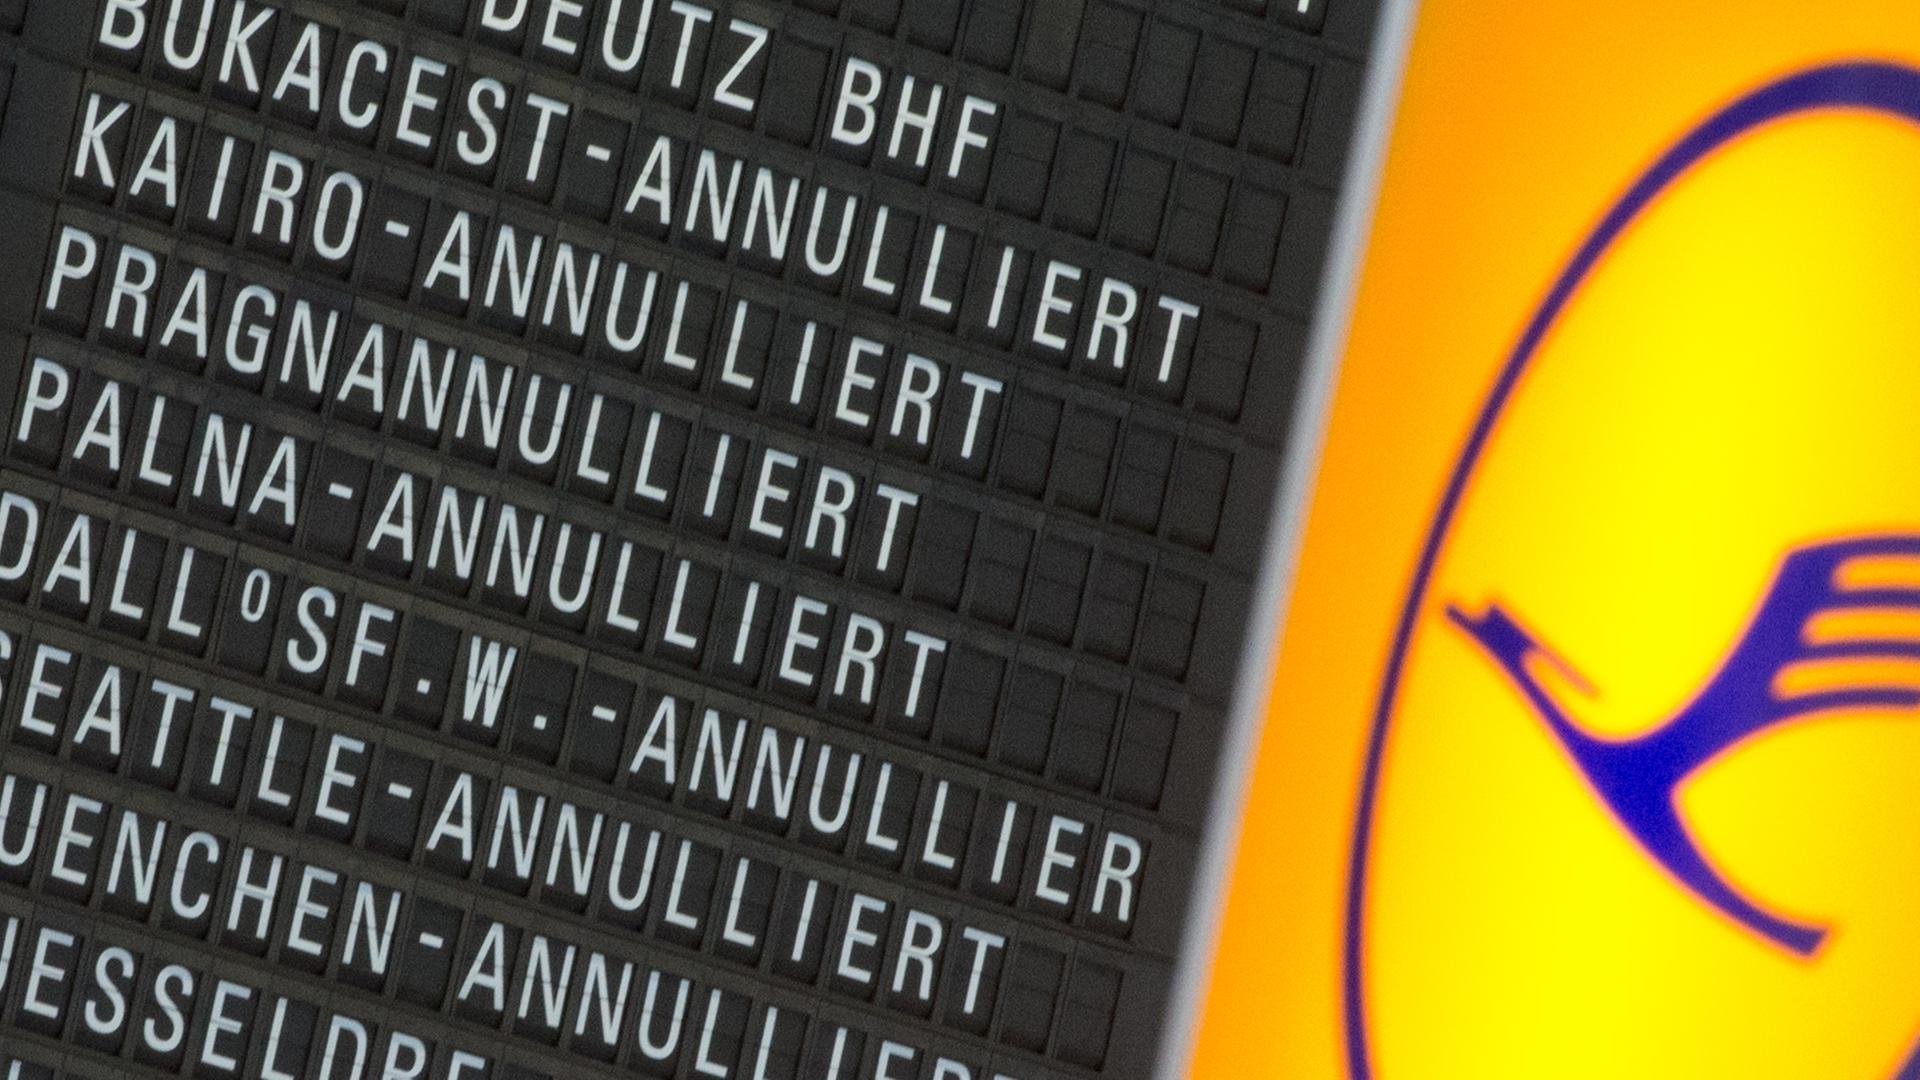 Annulliert sind zahlreiche Flüge der Lufthansa am 04.04.2014 auf einer Anzeigentafel im Flughafen von Frankfurt am Main (Hessen).